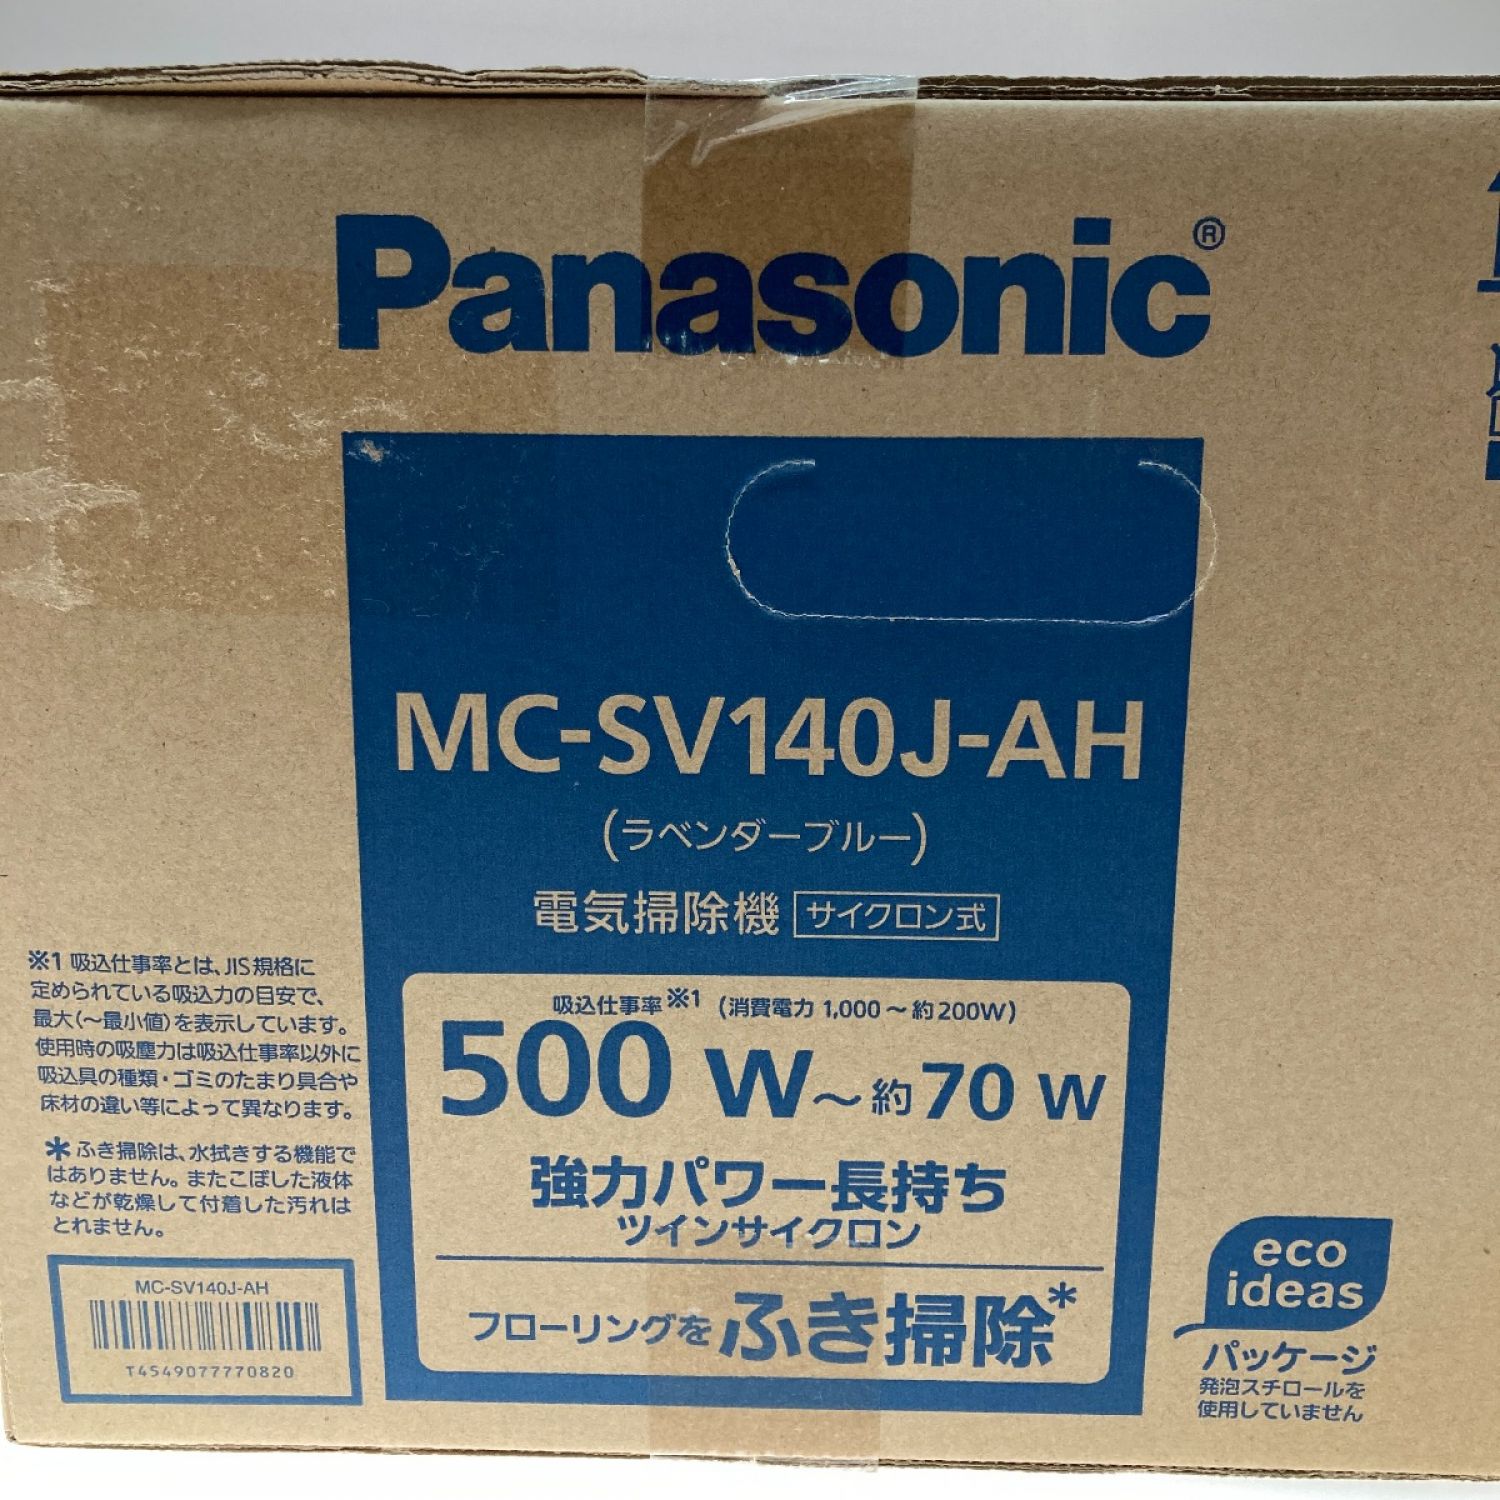 パナソニック サイクロン式電気掃除機 MC-SV140J-AH ラベンダーブルー 掃除機 注文割引